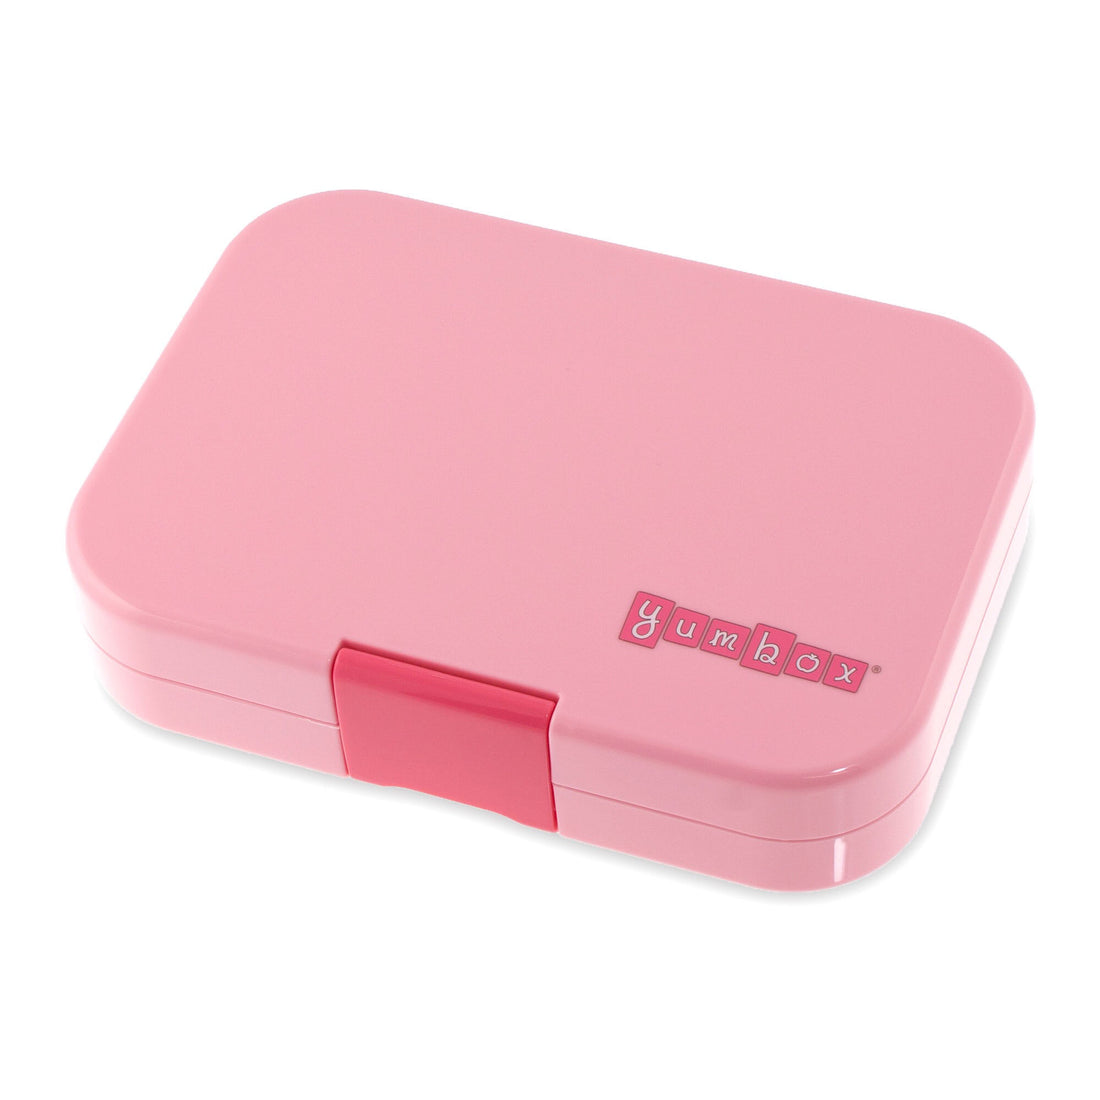 yumbox-panino-gramercy-pink-nyc-4-compartment-lunch-box- (3)